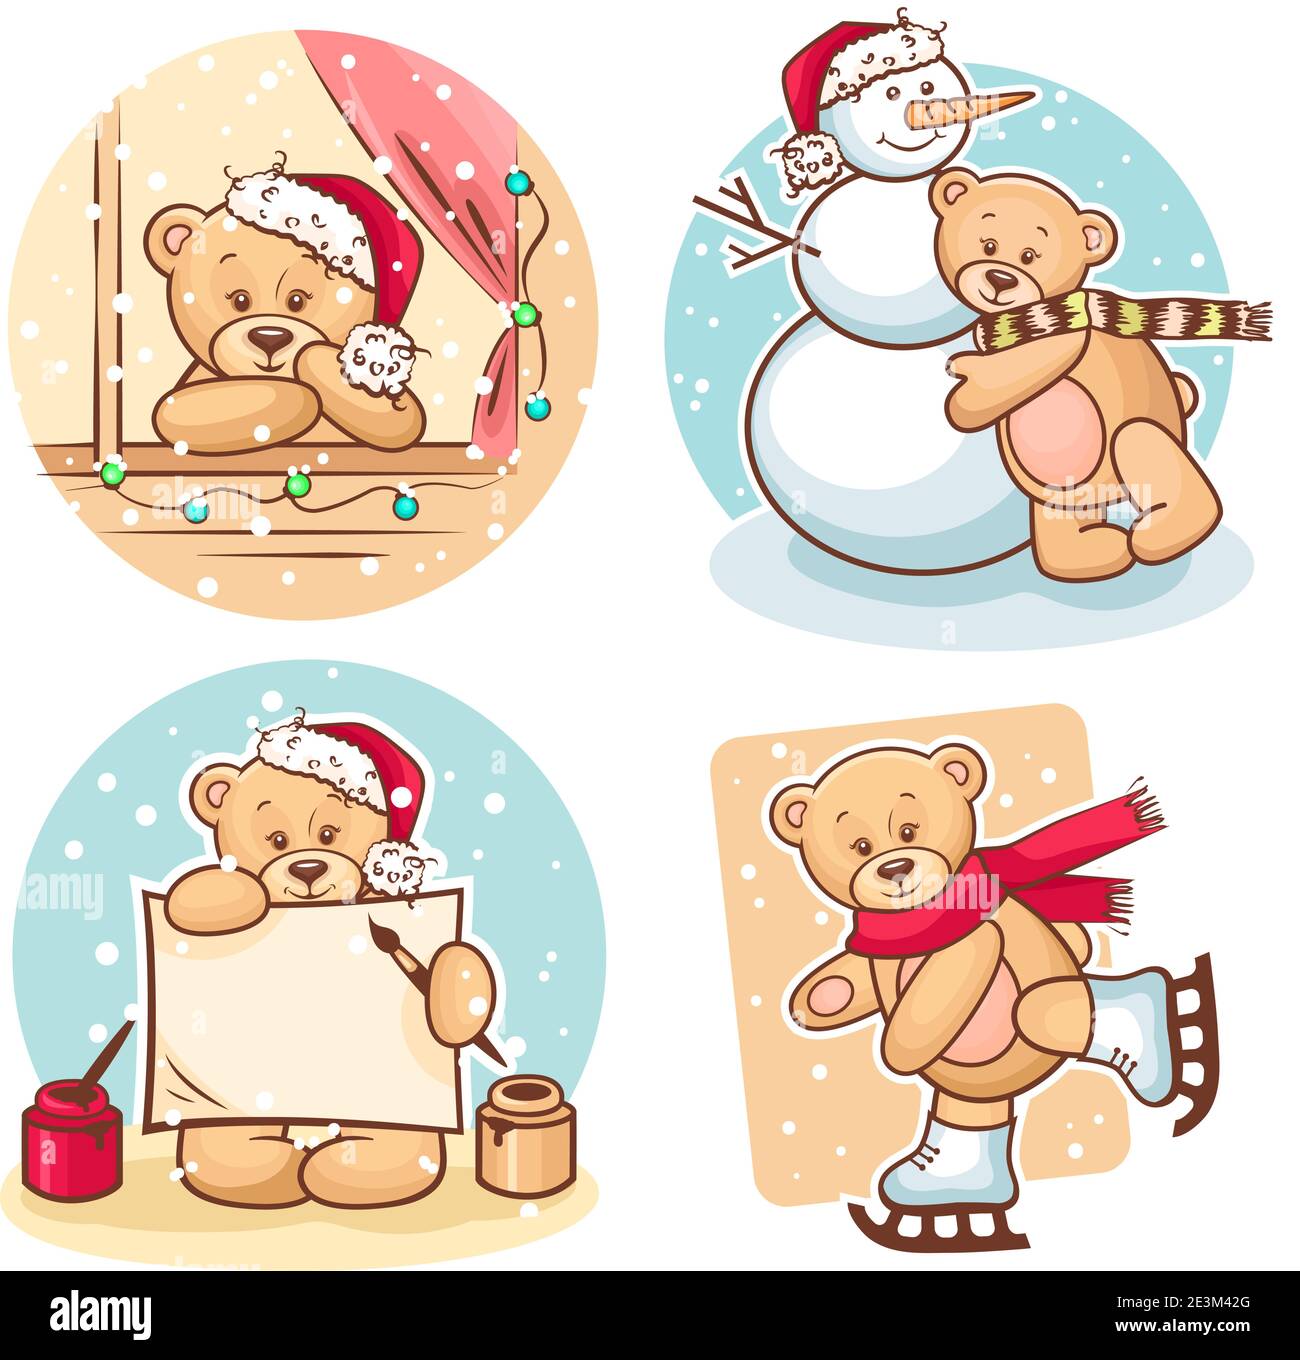 Simpatica illustrazione degli orsi di Natale Teddy, per il design xmas. Illustrazione Vettoriale